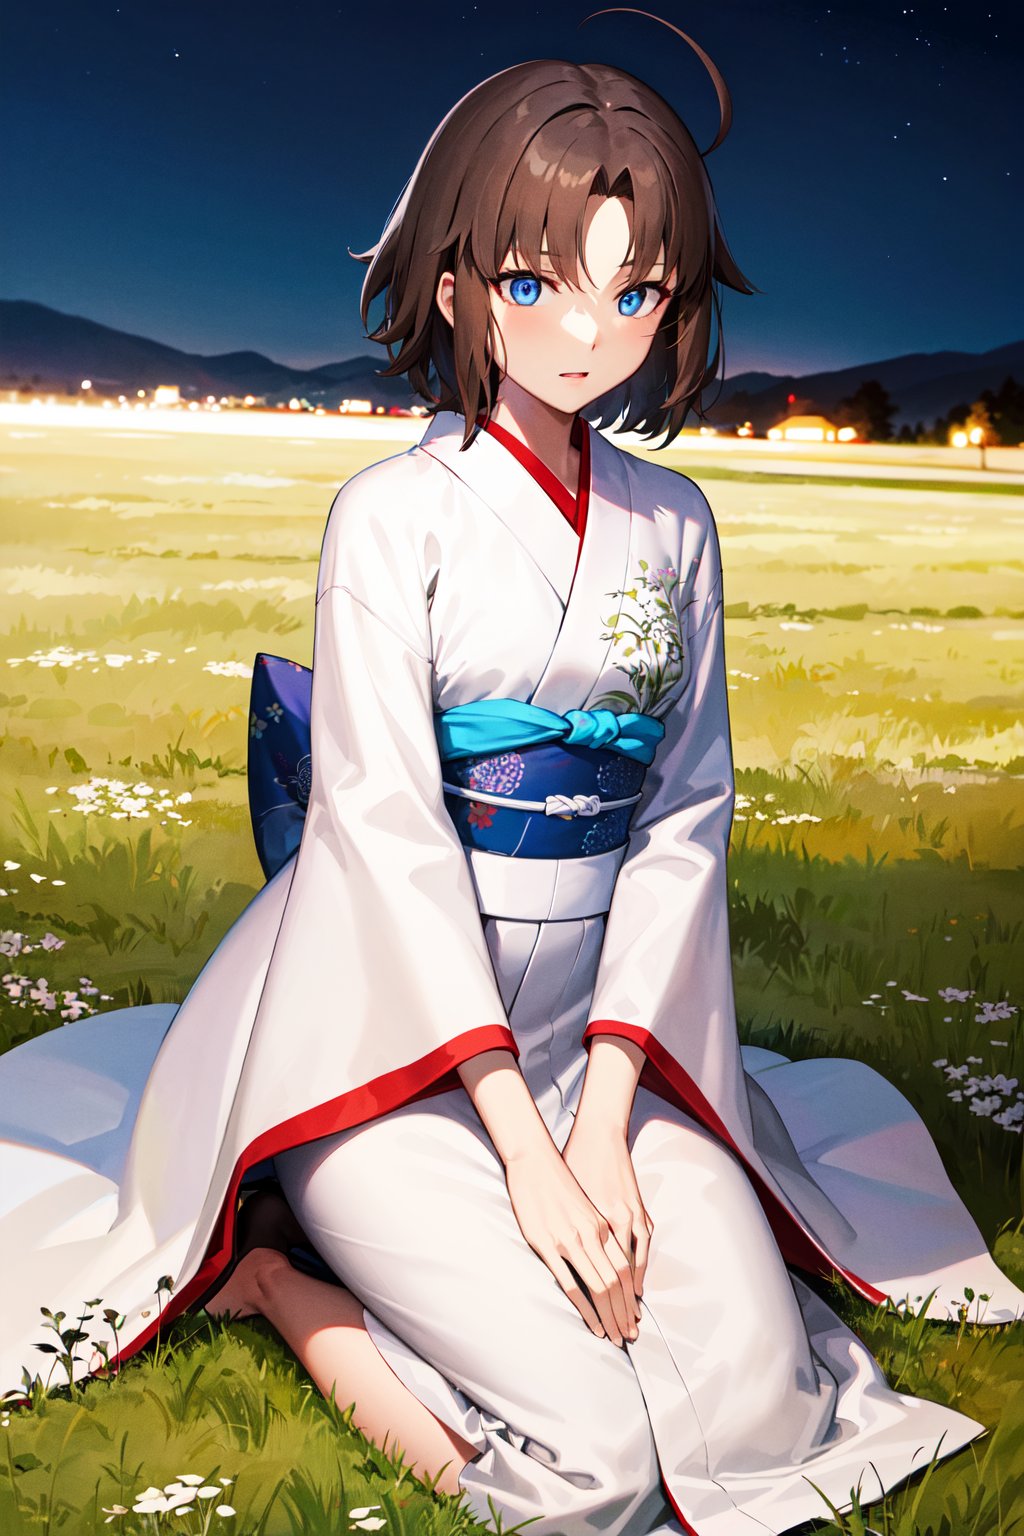 masterpiece, best quality, highres, hmshiki, short hair, ahoge, blue eyes, white kimono, <lora:ryougi_shiki_v1:0.7>, grass, kneeling, sitting, night